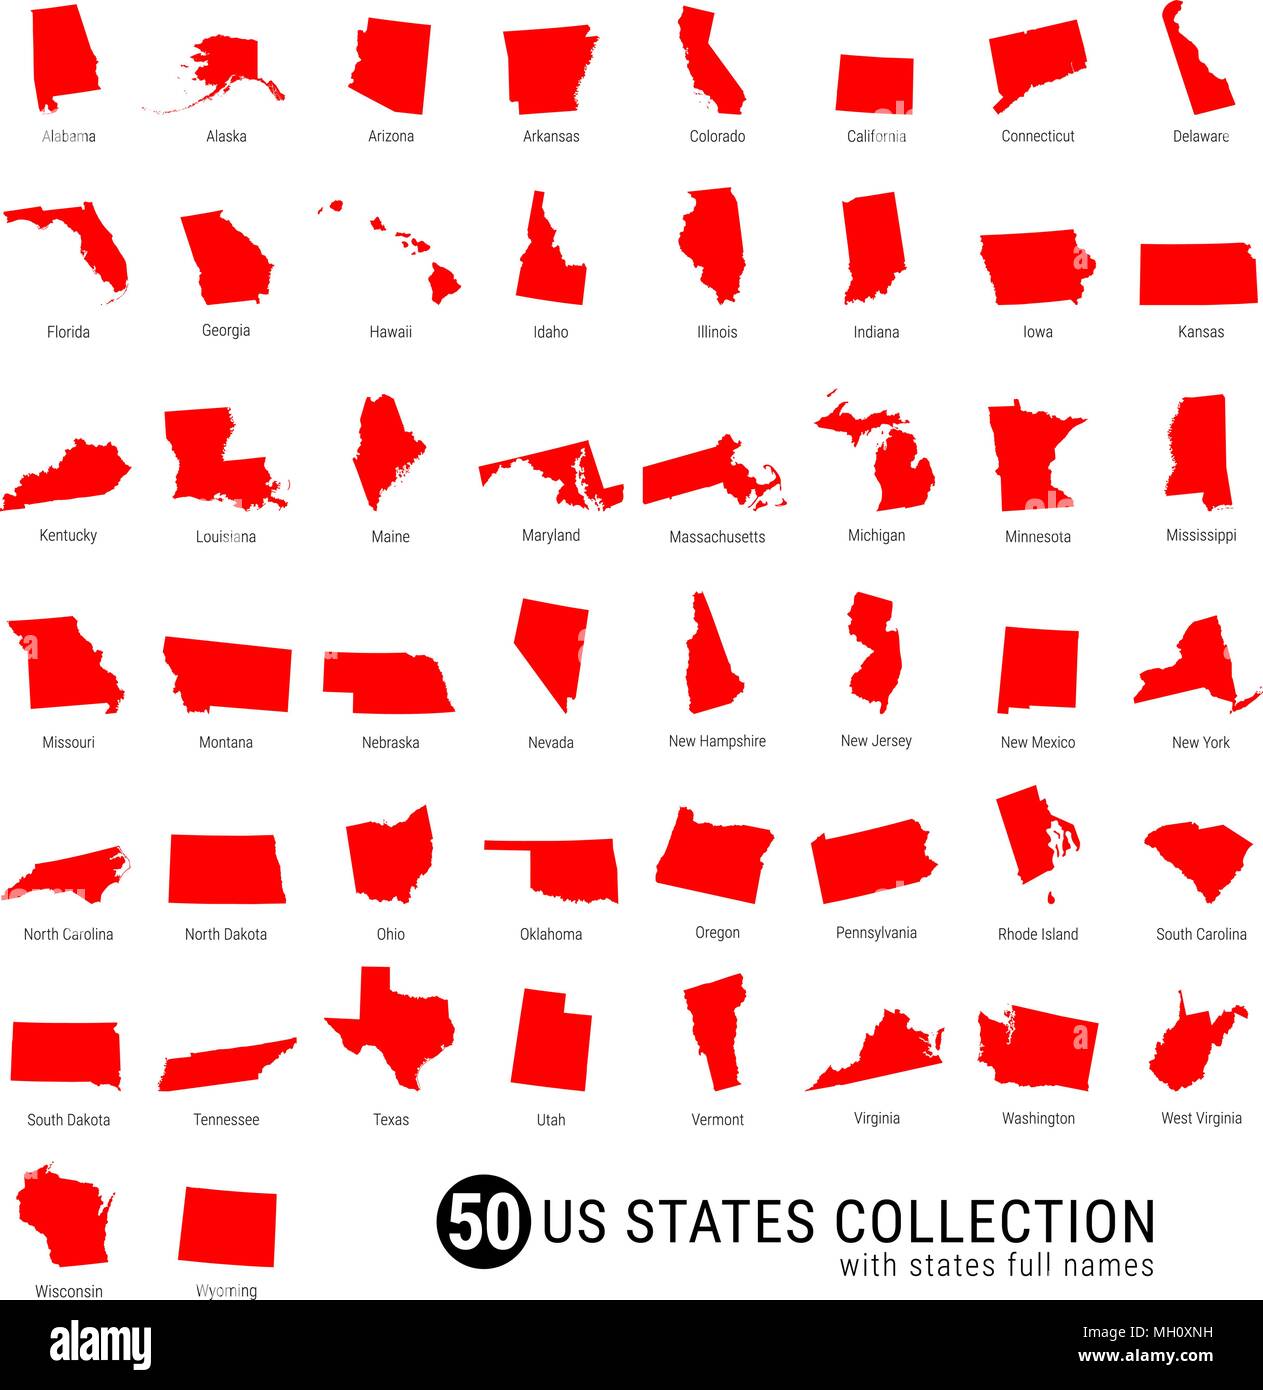 50-nous Membres Vector Collection. High-Detailed Silhouette rouge des cartes de tous les 50 États. Nous joindre Membres avec les noms Illustration de Vecteur